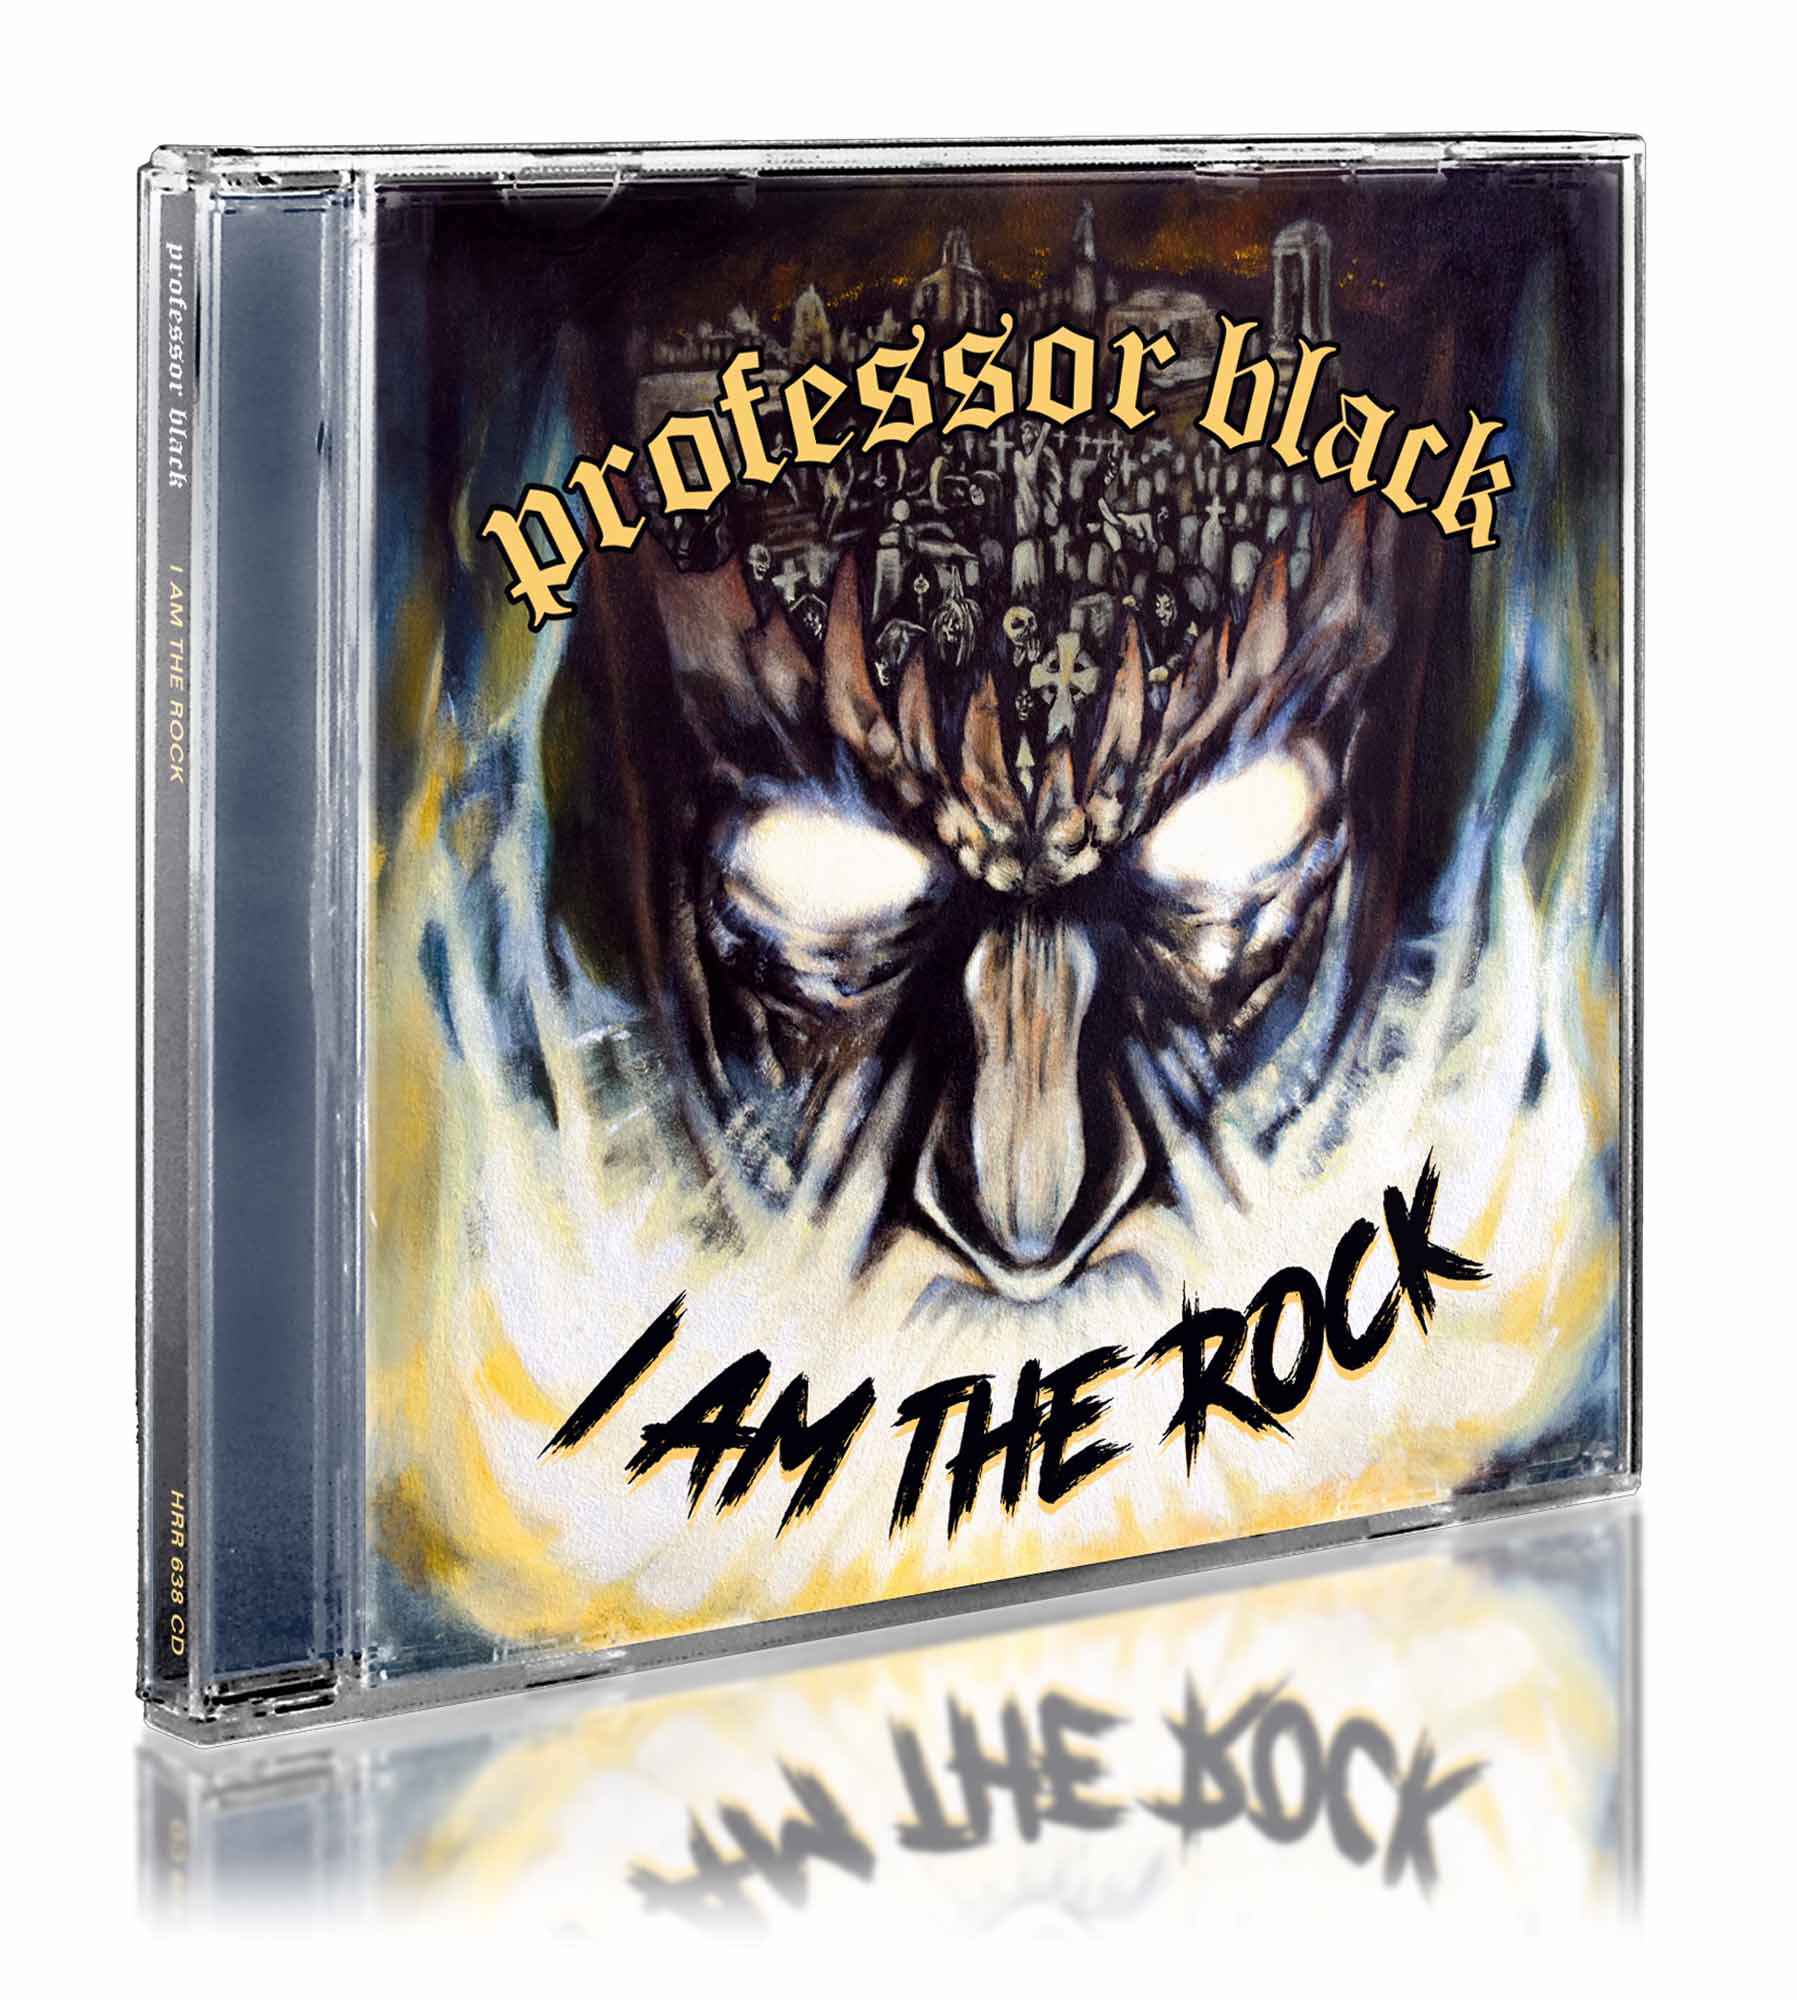 PROFESSOR BLACK - I am the Rock  CD